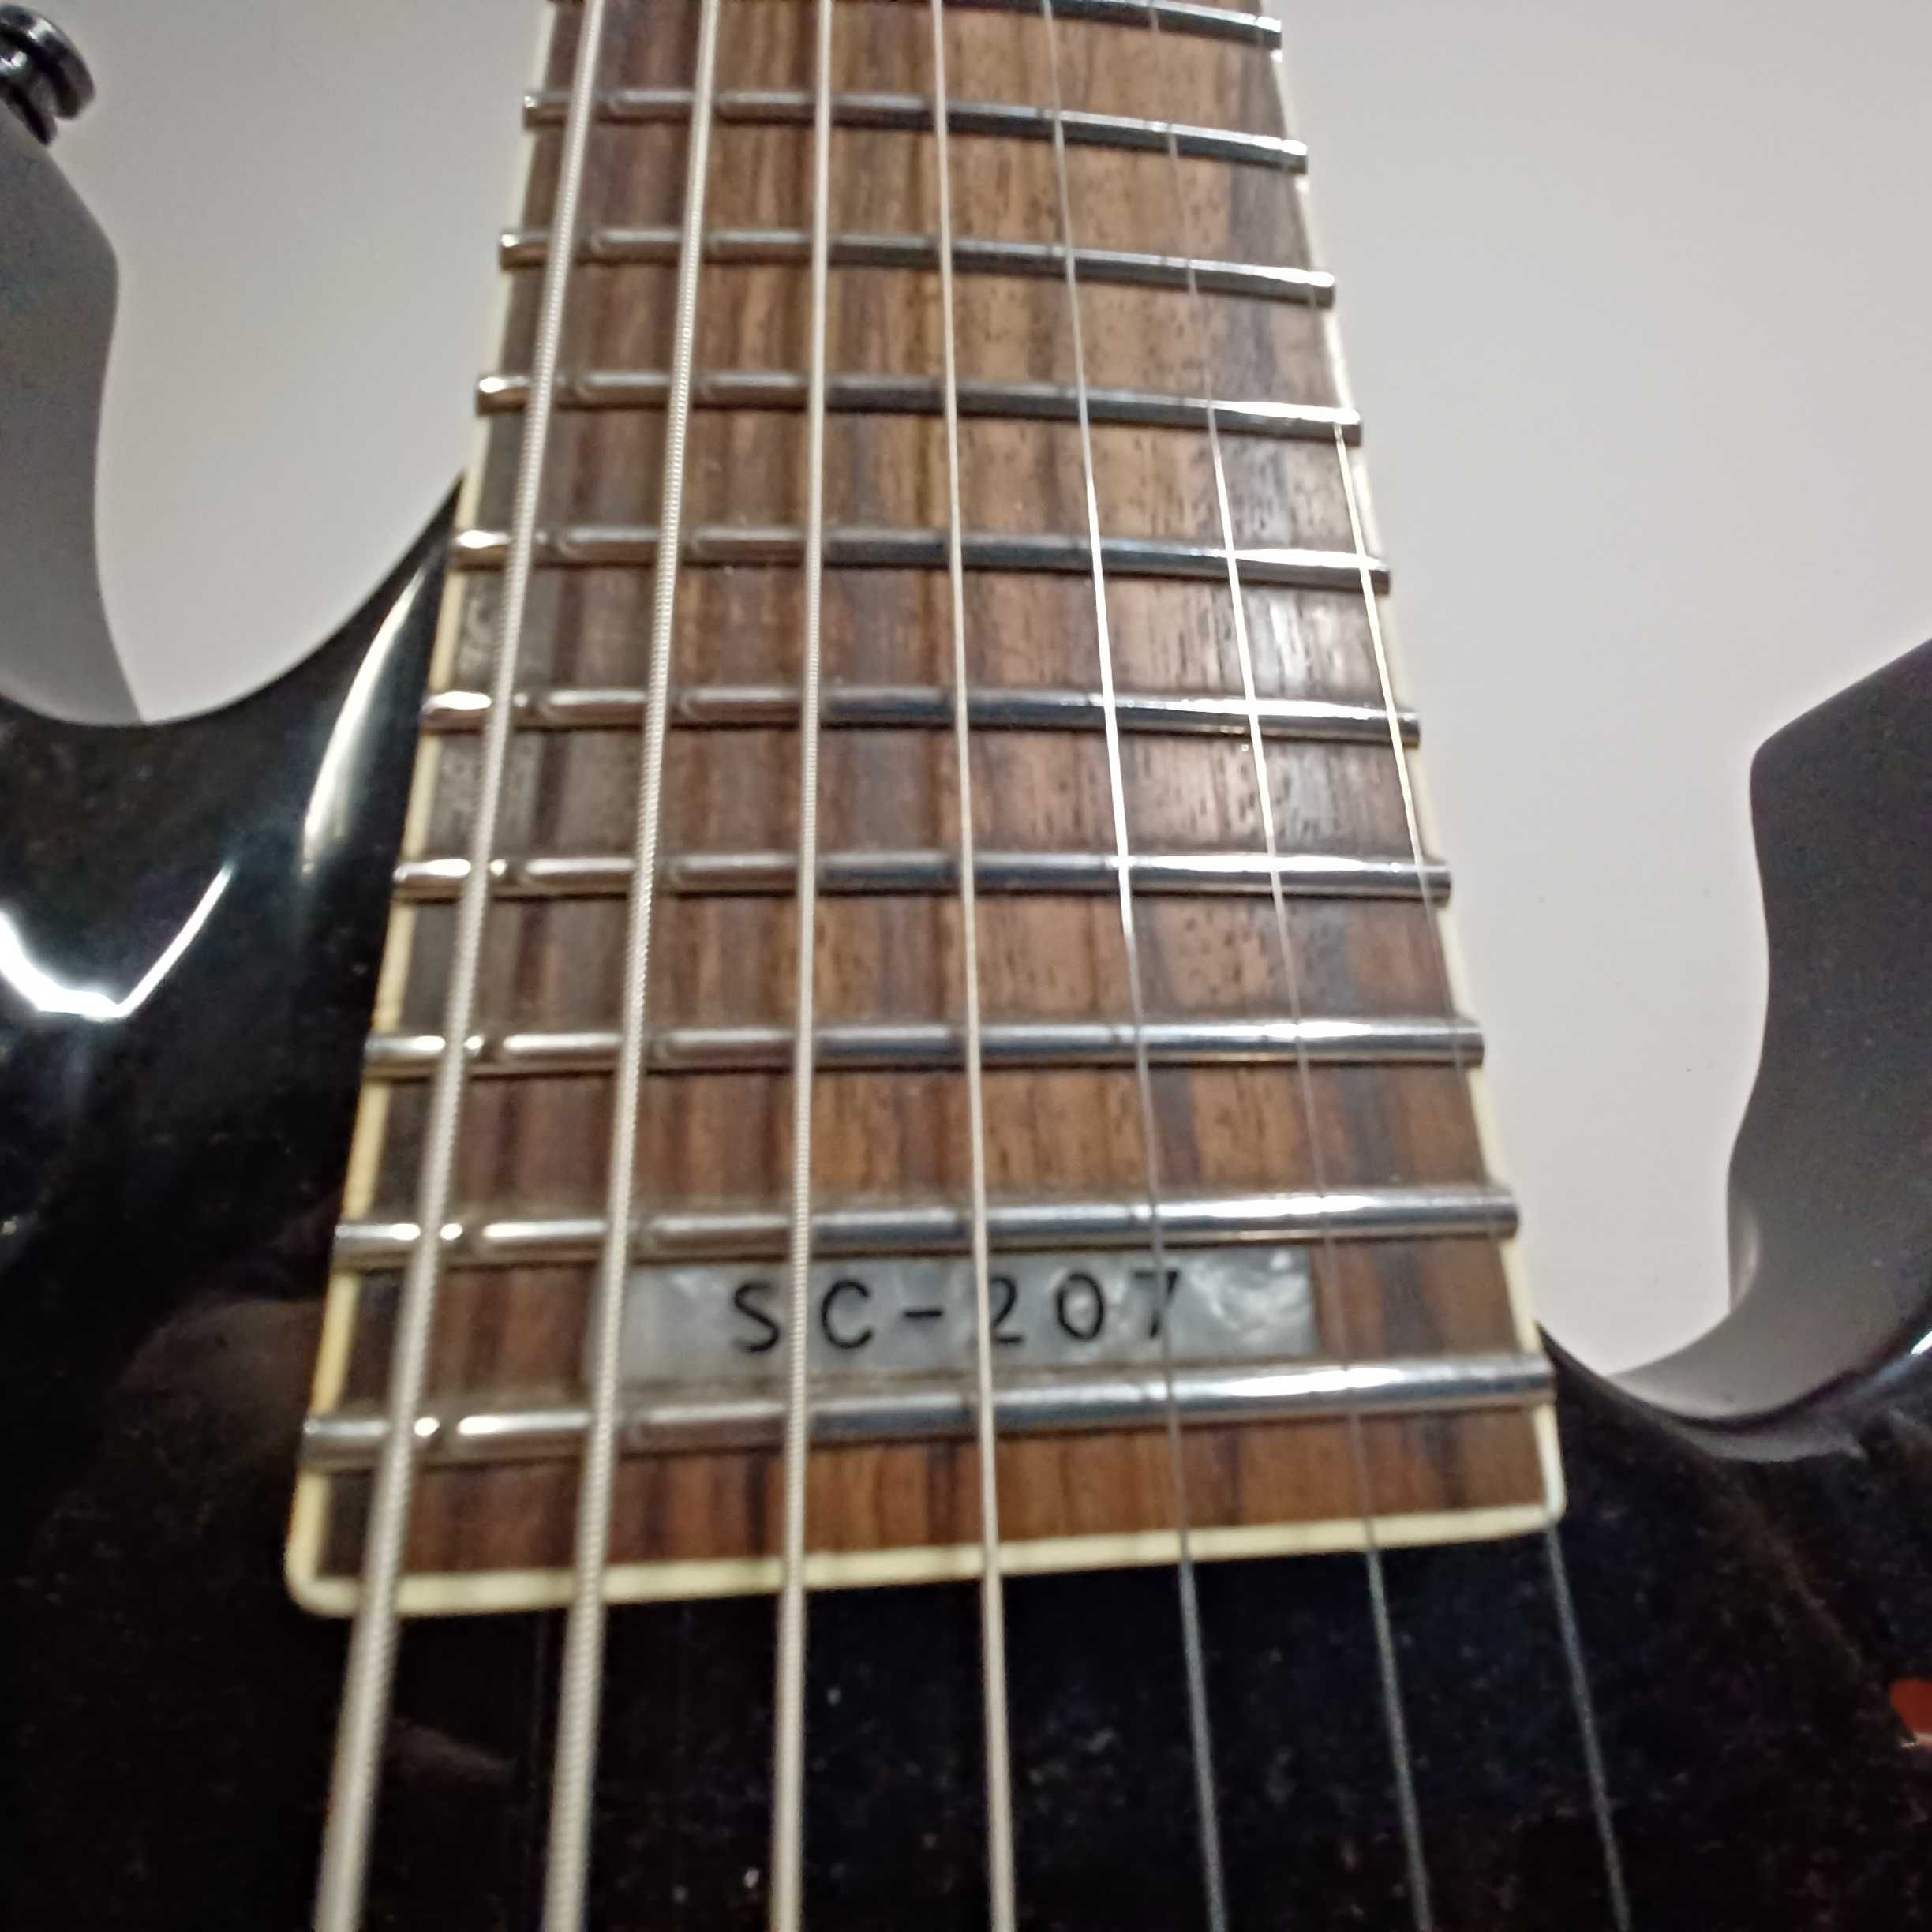 ESP LTD SC-207 Stephen Carpenter Signature gitara elektryczna 7 strun